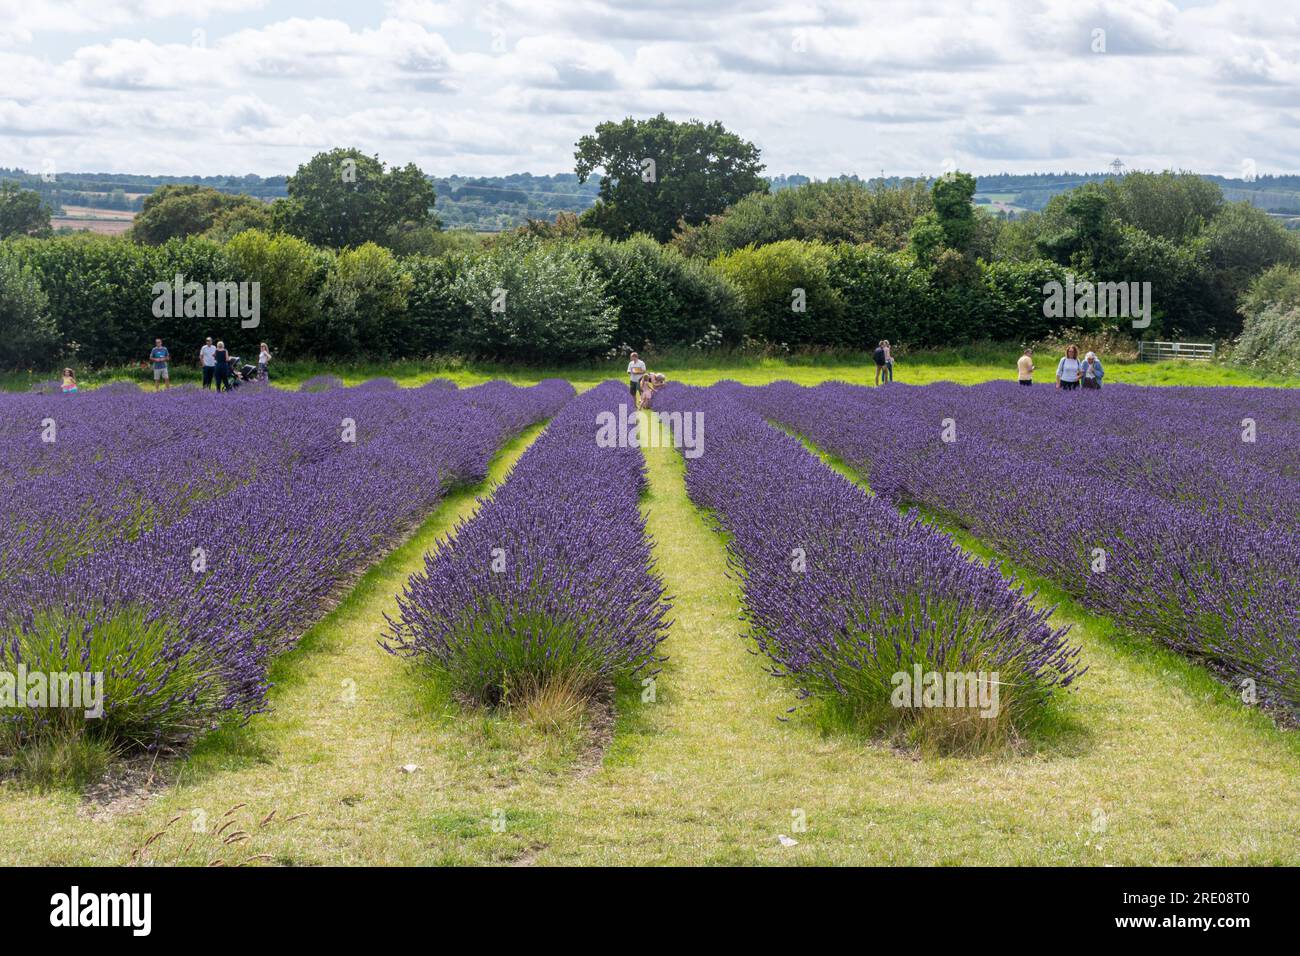 Campi di lavanda presso l'Hartley Farm Park vicino a Selborne, Hampshire, Inghilterra, Regno Unito, con i visitatori che si godono gli splendidi fiori viola a luglio Foto Stock